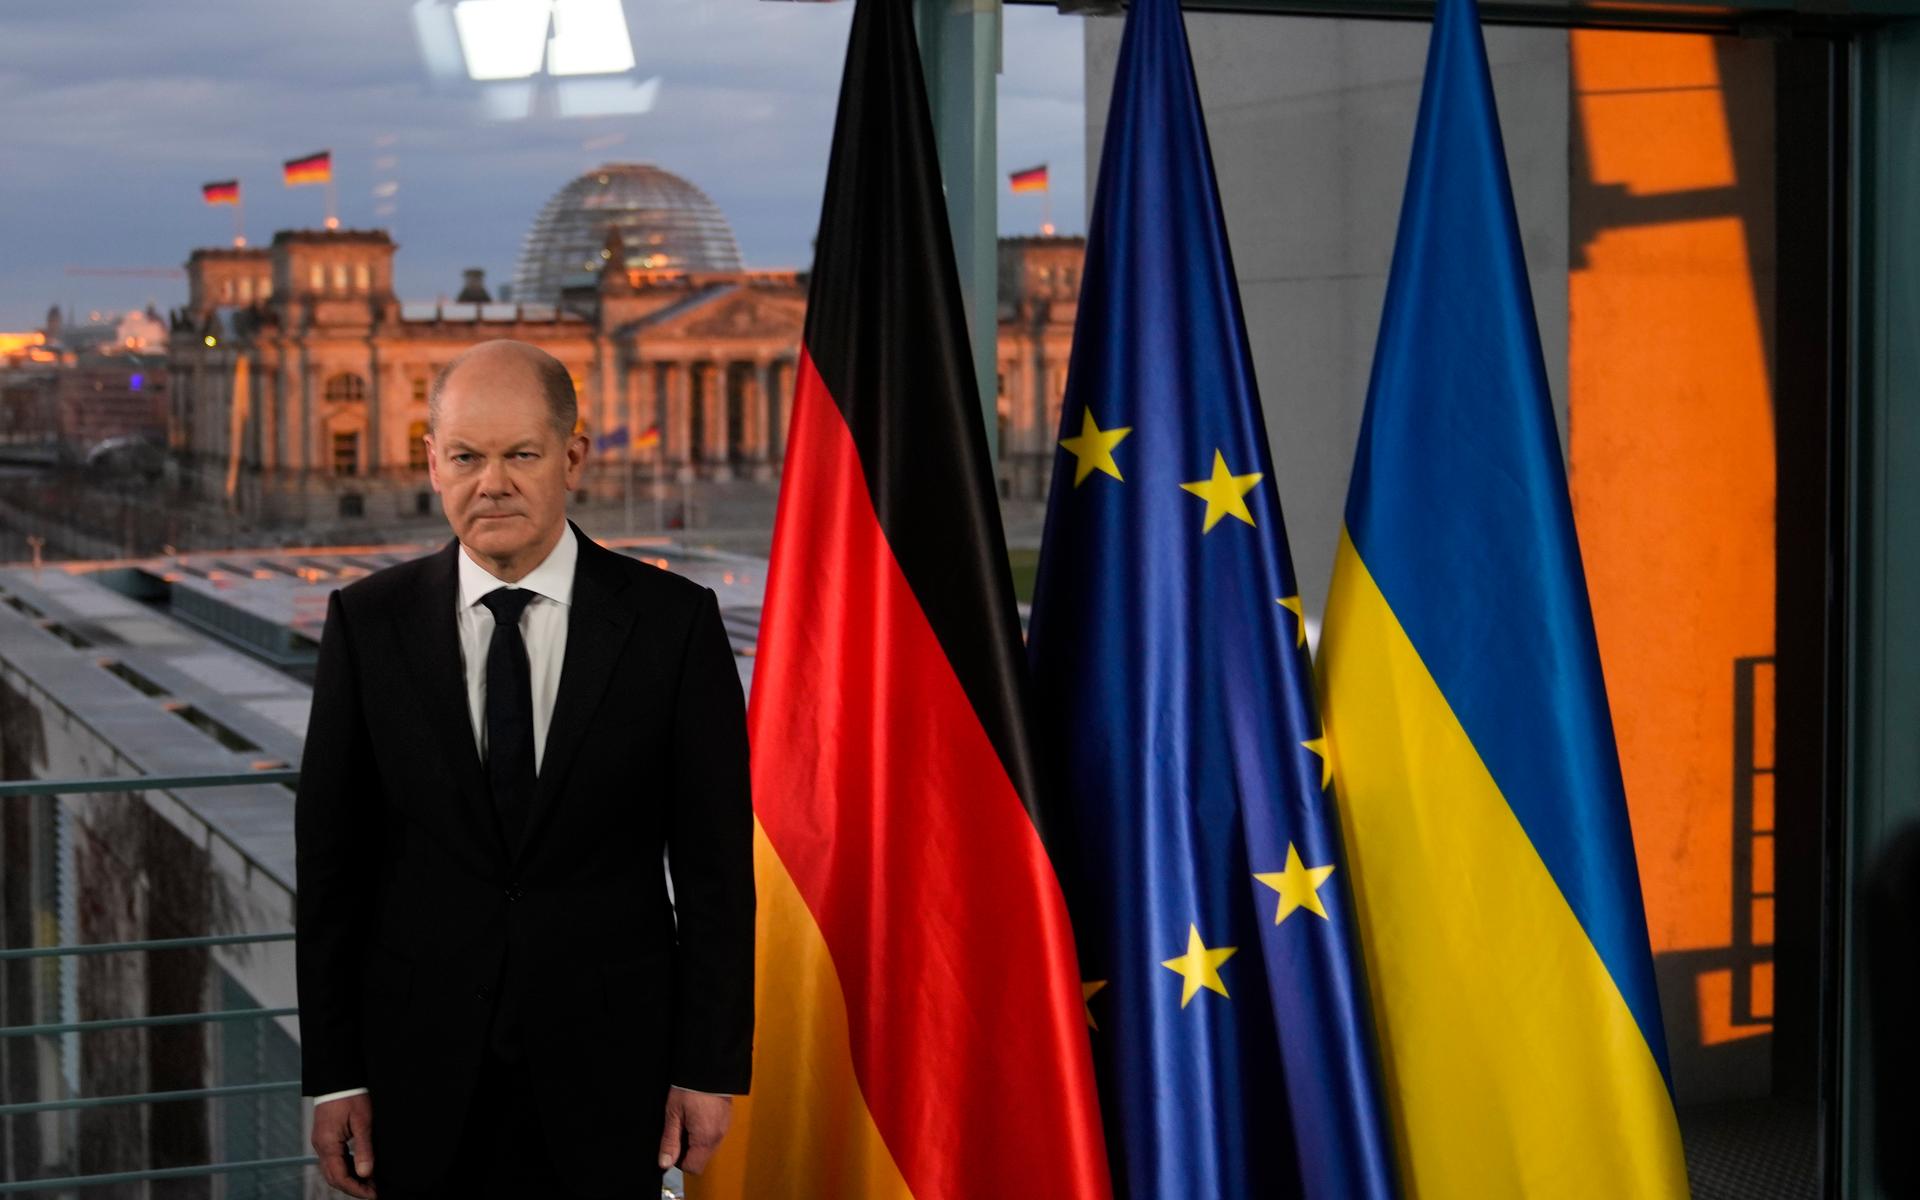  Tysklands nya förbundskansler Olaf Scholz talade i tv om Ukrainakonflikten den 24 februari.